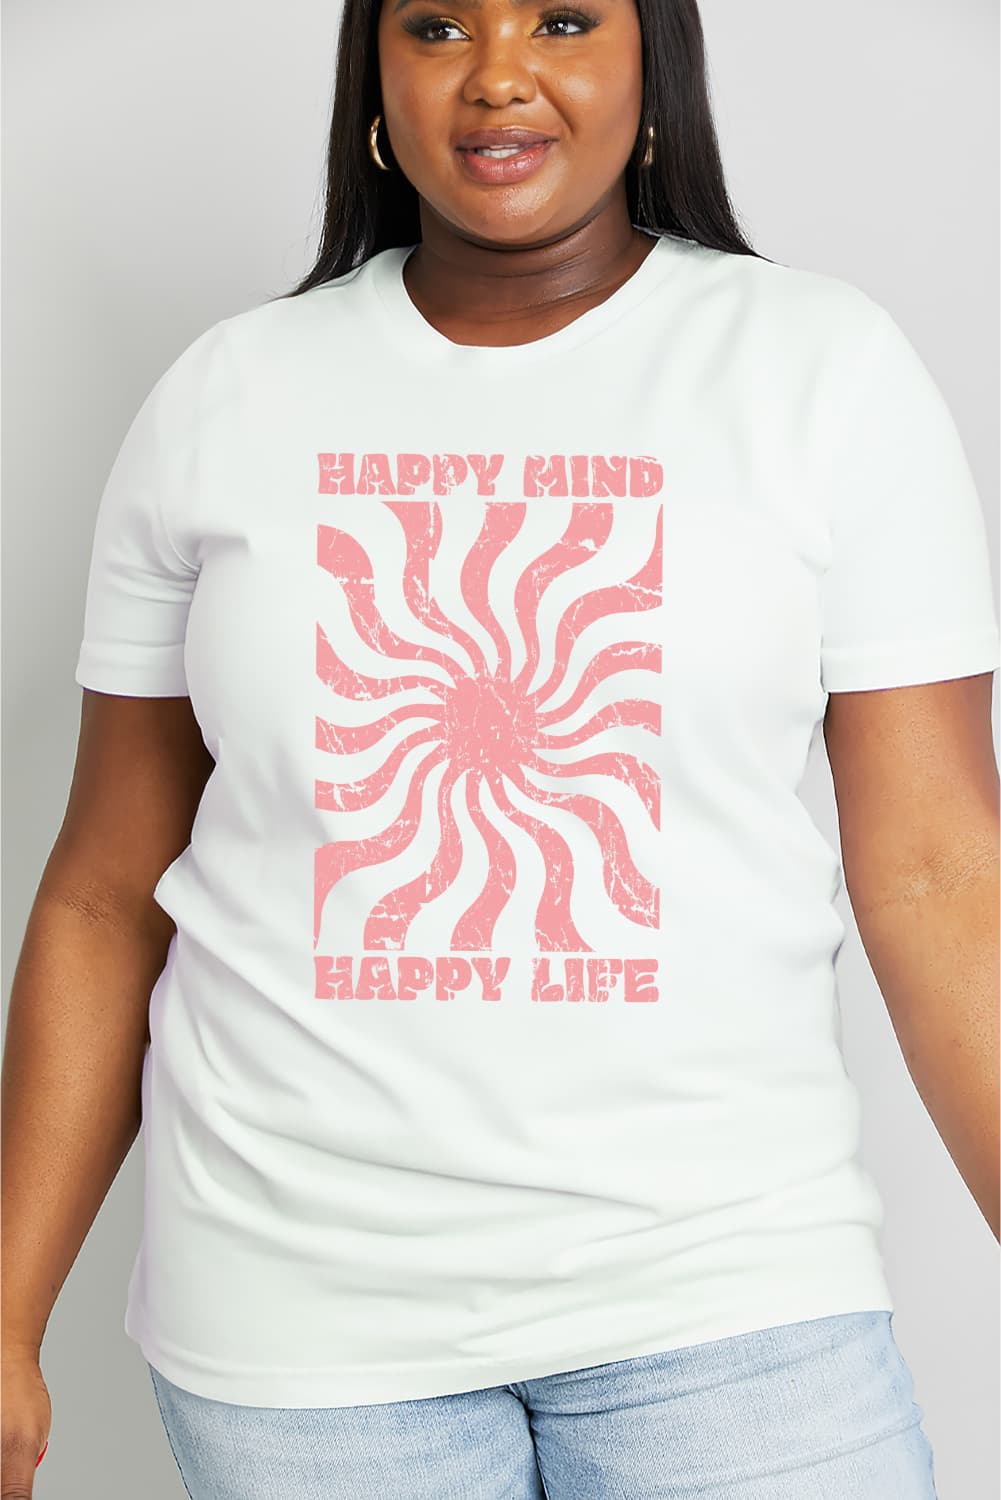 HAPPY MIND HAPPY LIFE Graphic Cotton Tee